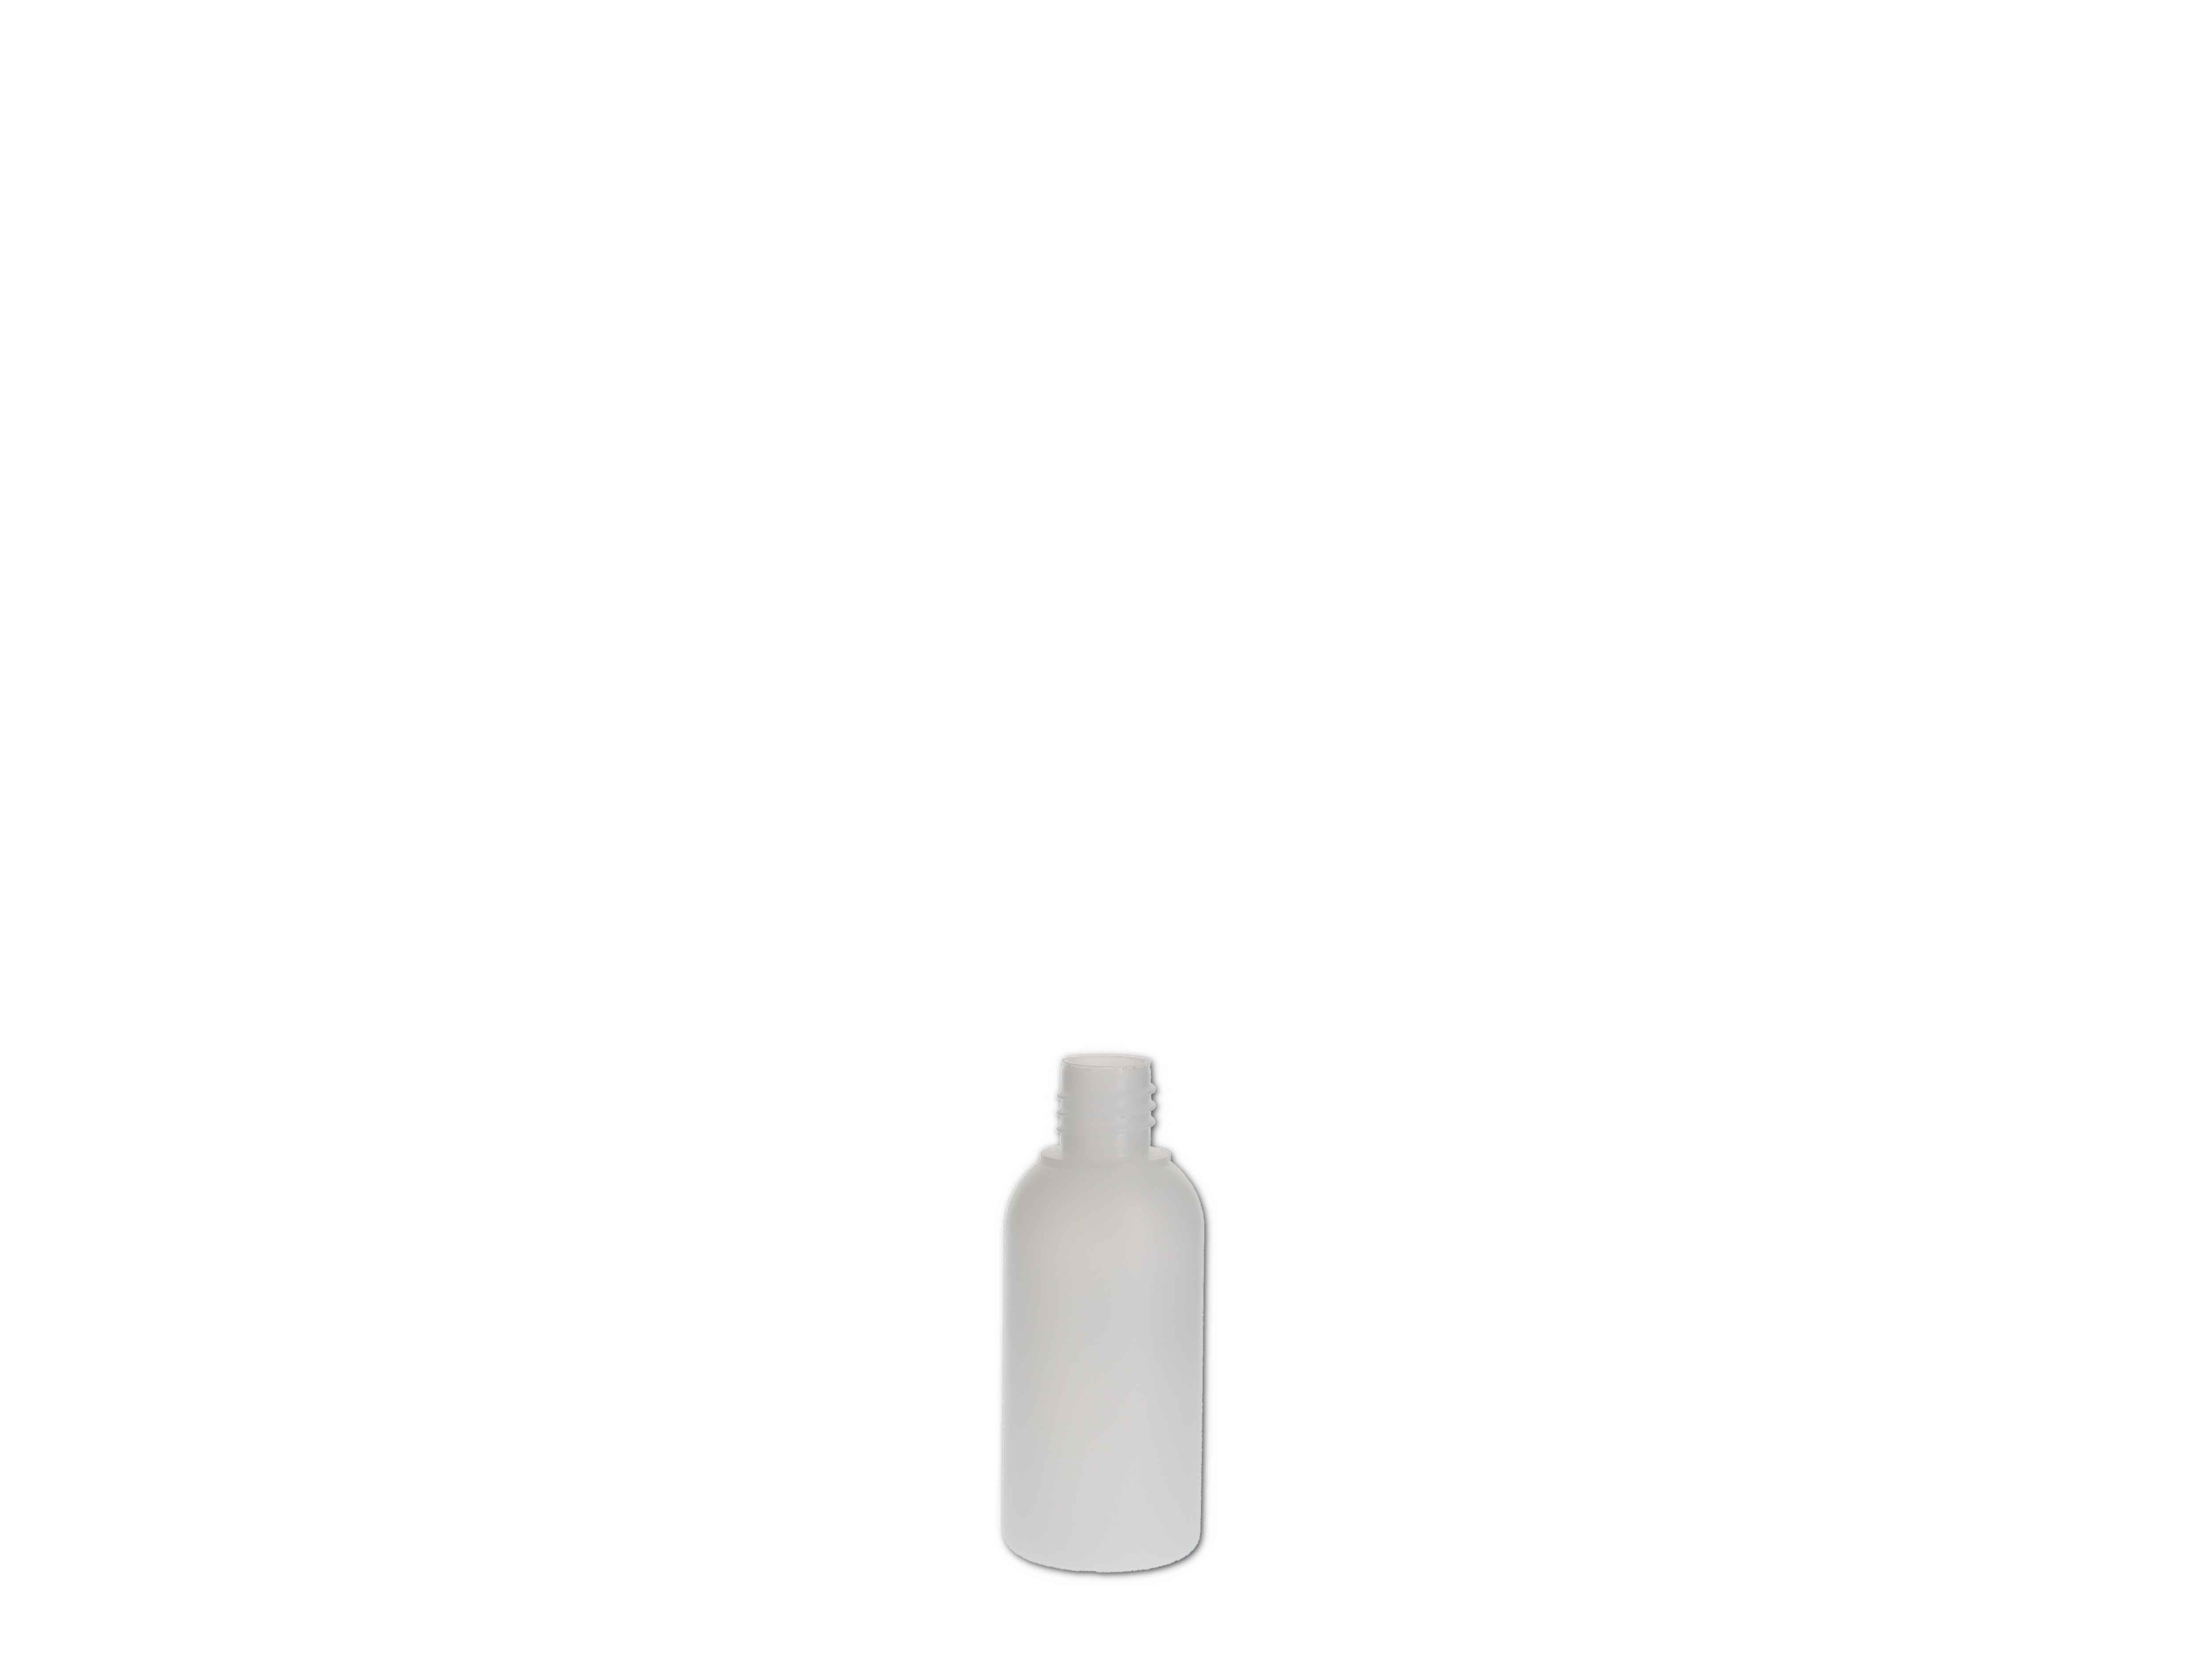    Kunststoff-Flasche rund, natur ohne Verschluss - 50ml